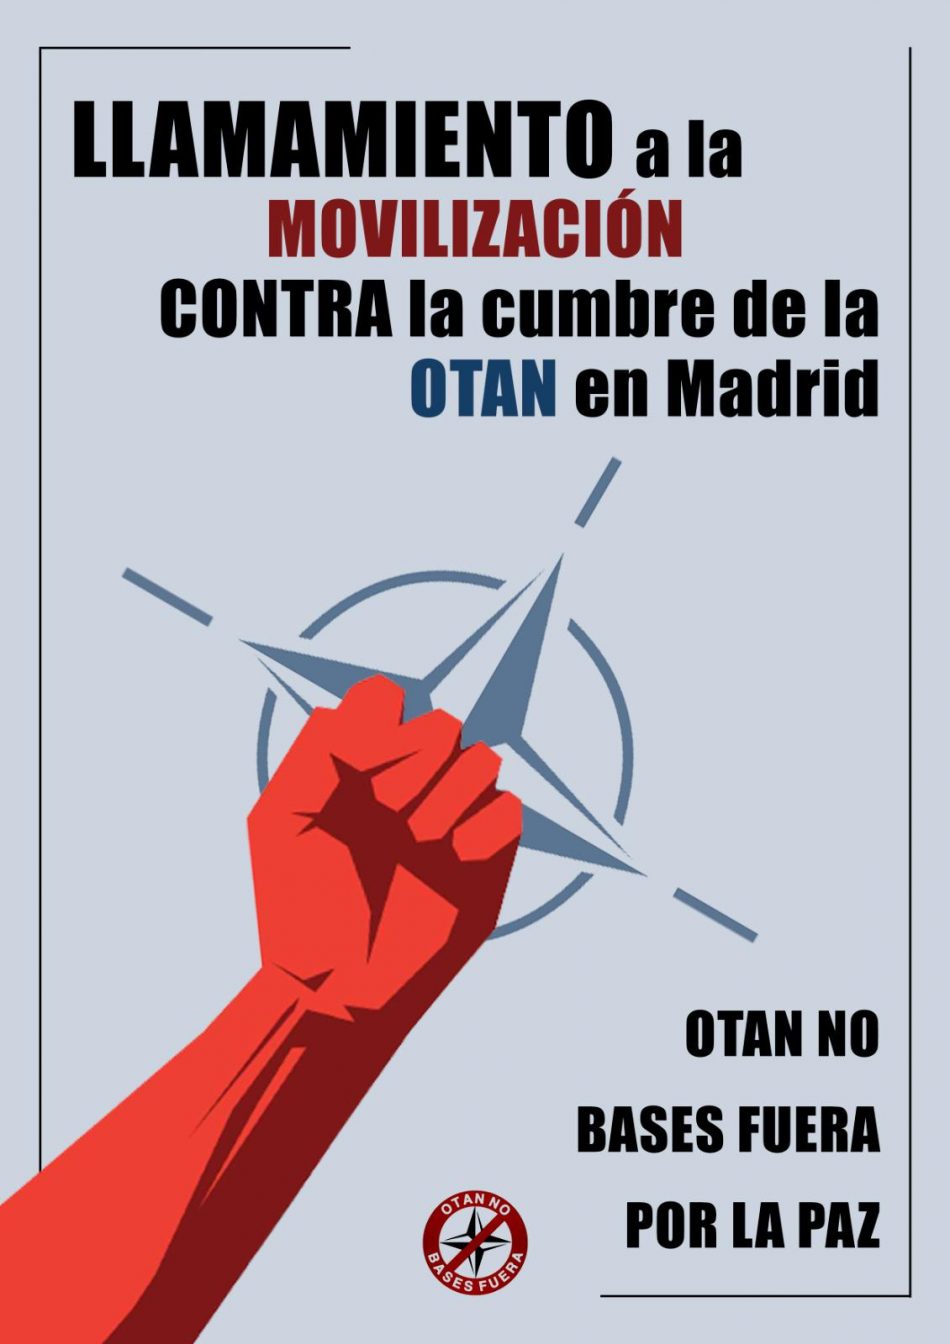 Llamamiento a la movilización contra la Cumbre de la OTAN en Madrid. «OTAN no, bases fuera, por la paz»: 24 y 25 de junio